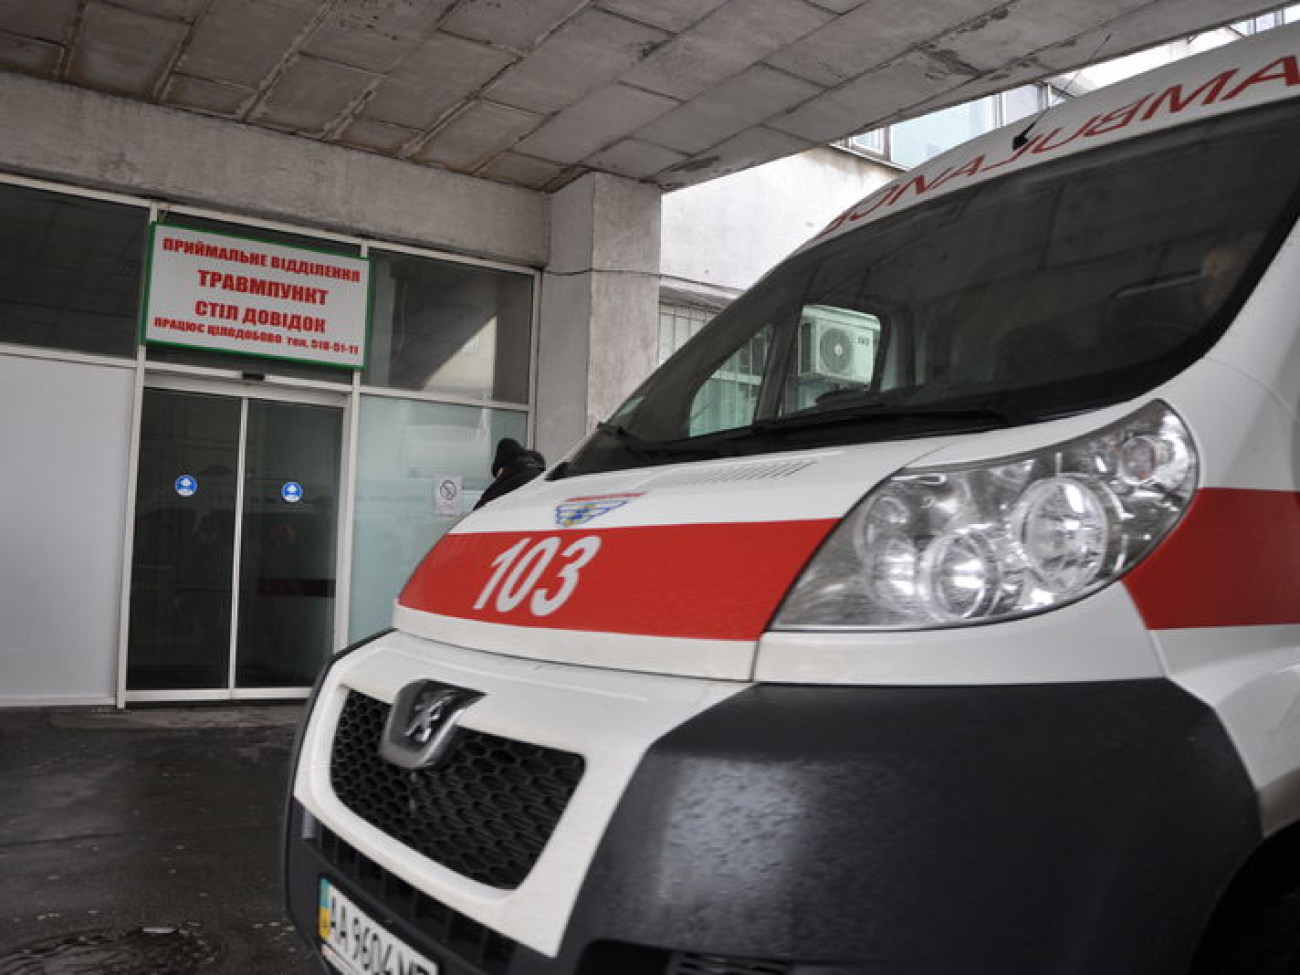 Киевская городская клиническая больница скорой помощи, 4 января 2013г.